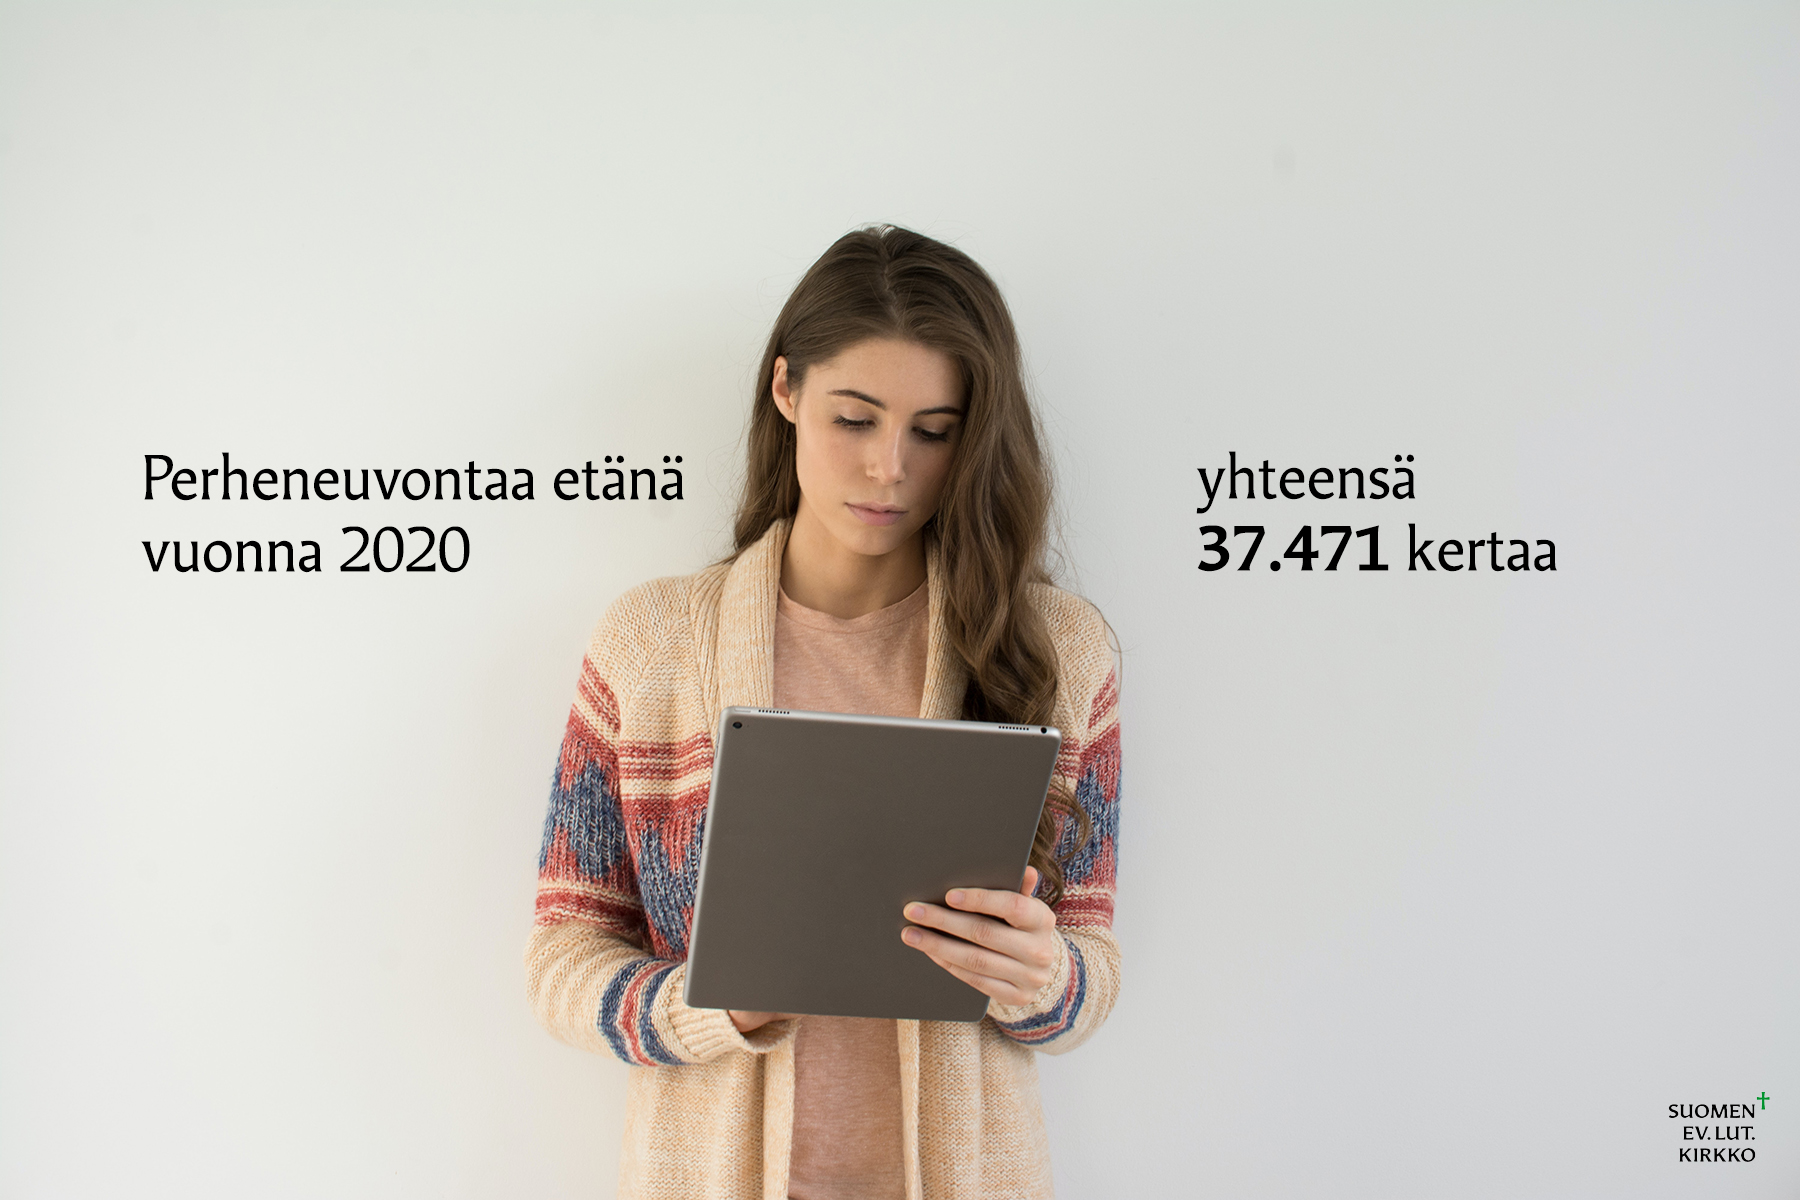 Naine seisoo tietokone sylissään. Teksti: Perheneuvontaa etänä vuonna 2020 yhteensä 37.471 kertaa.